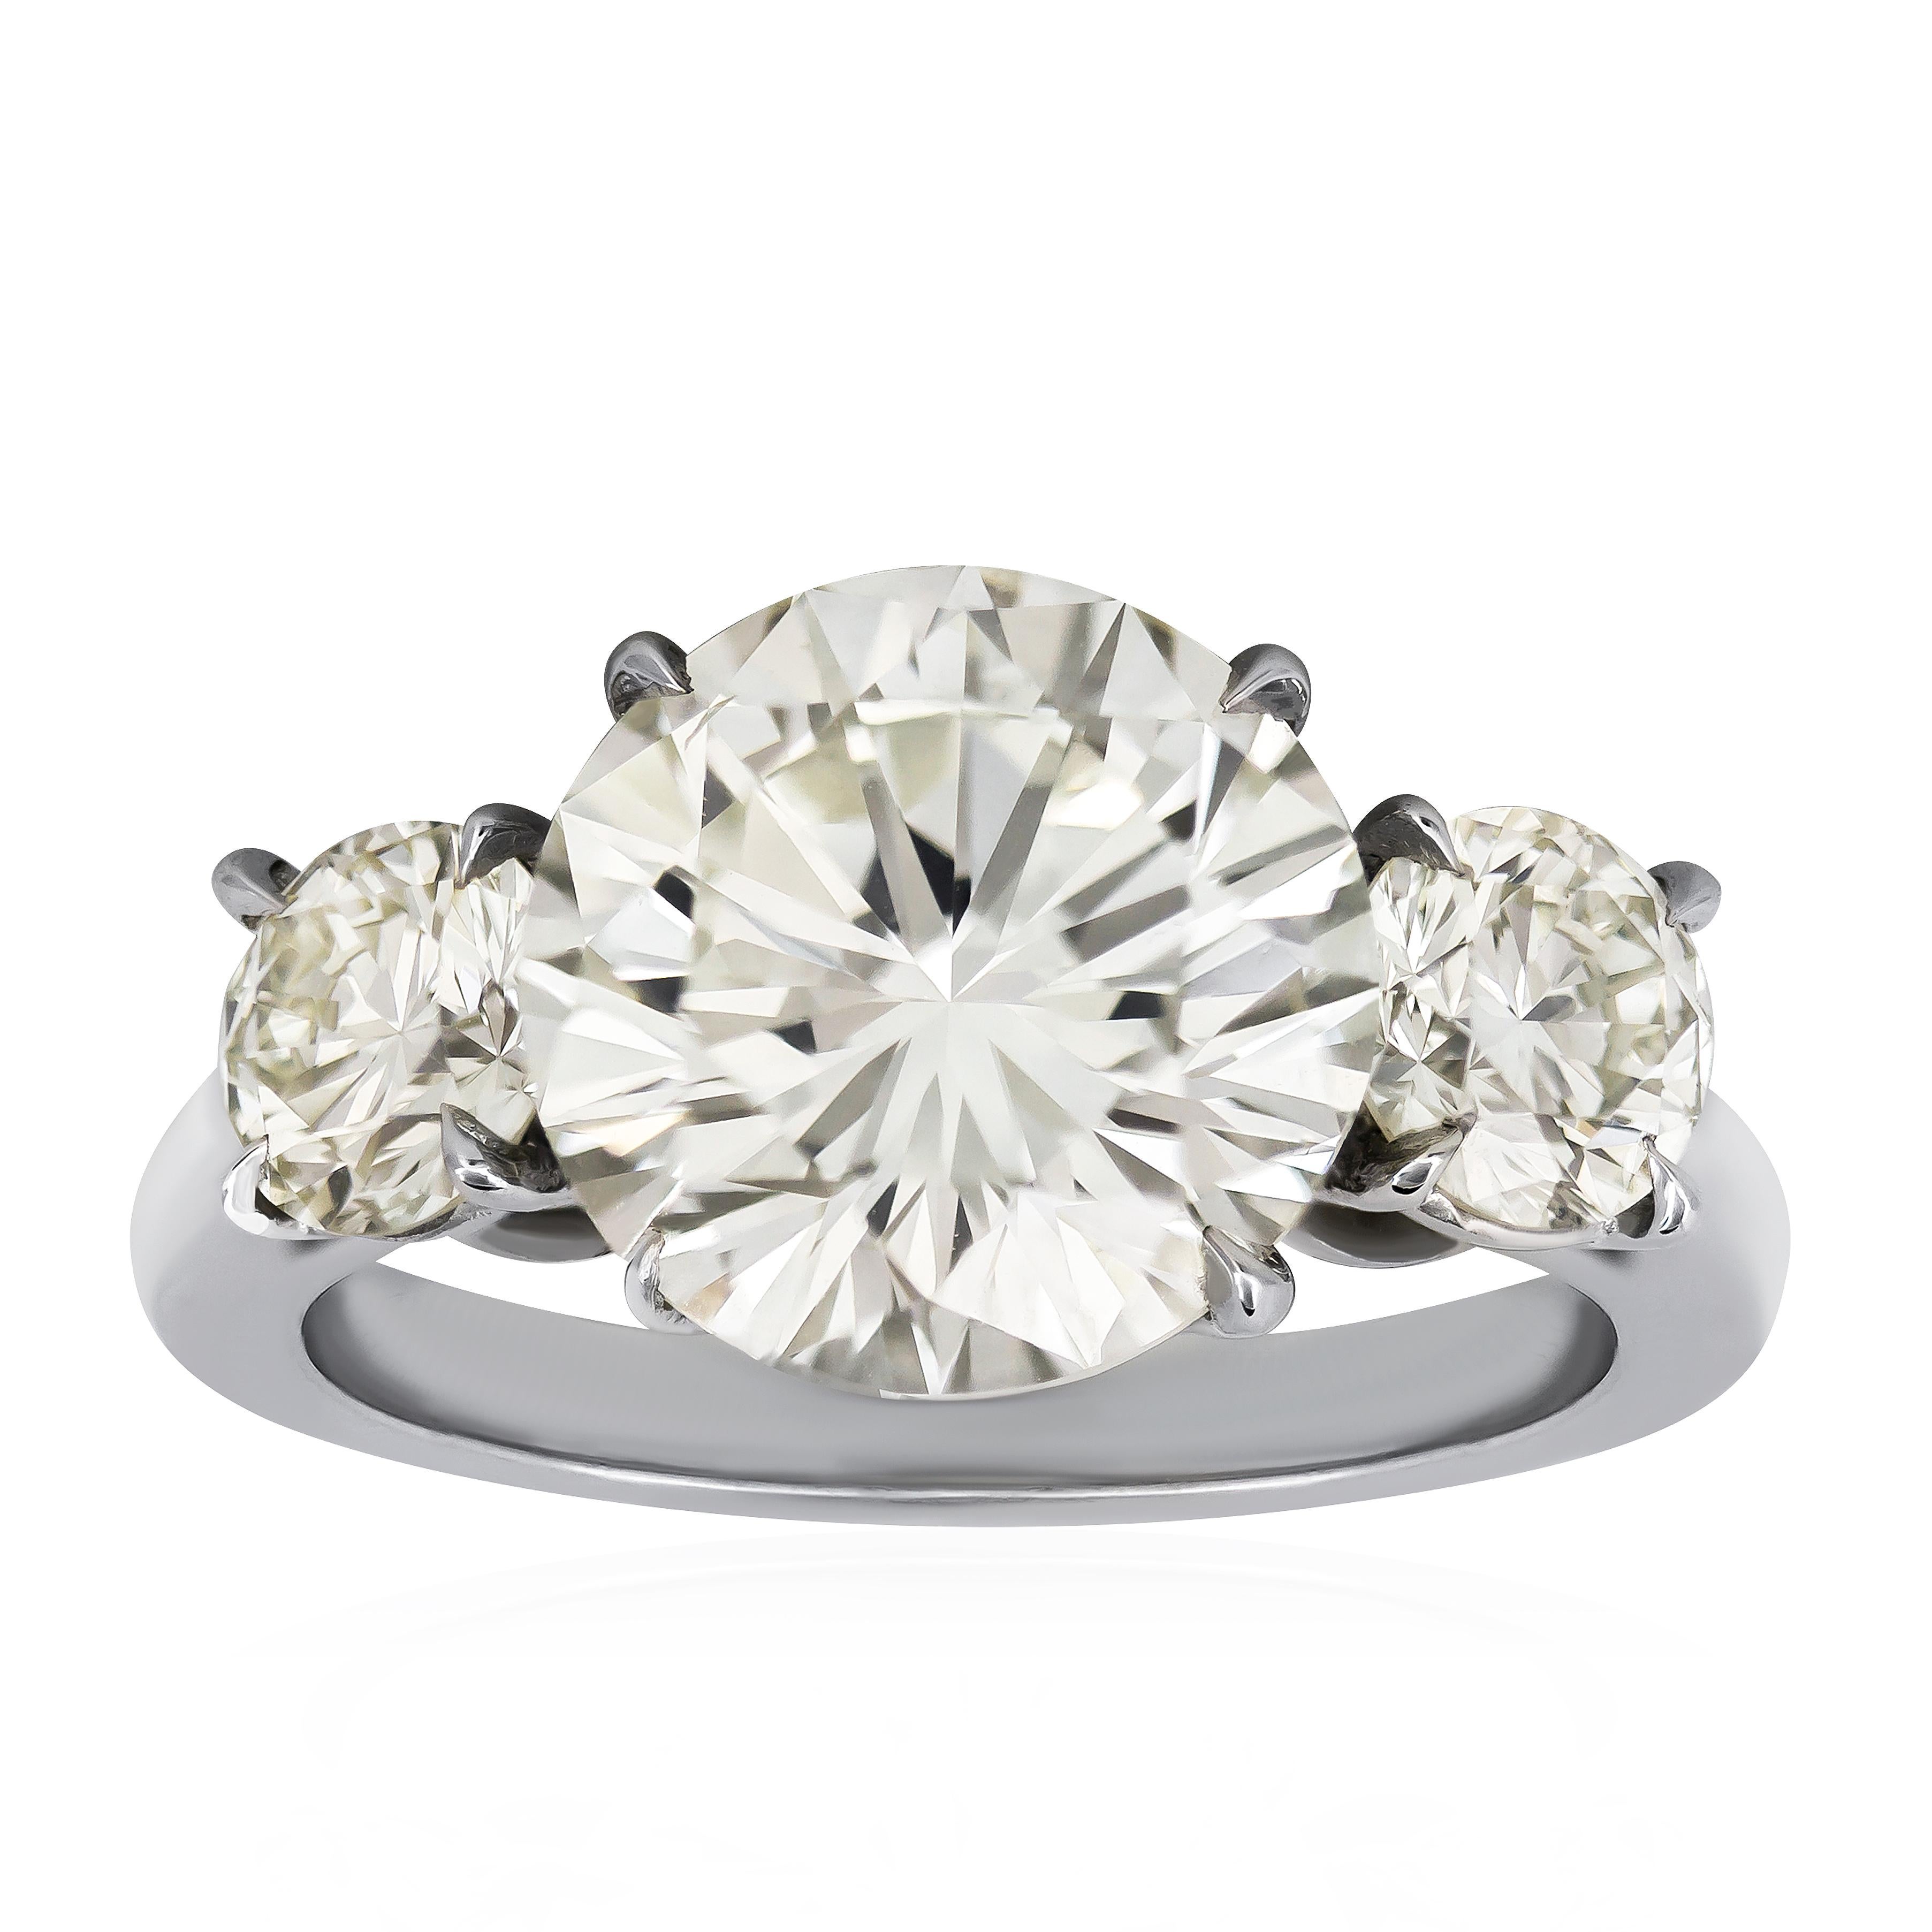 5.53 Carat Round Diamond Three-Stone Engagement Ring